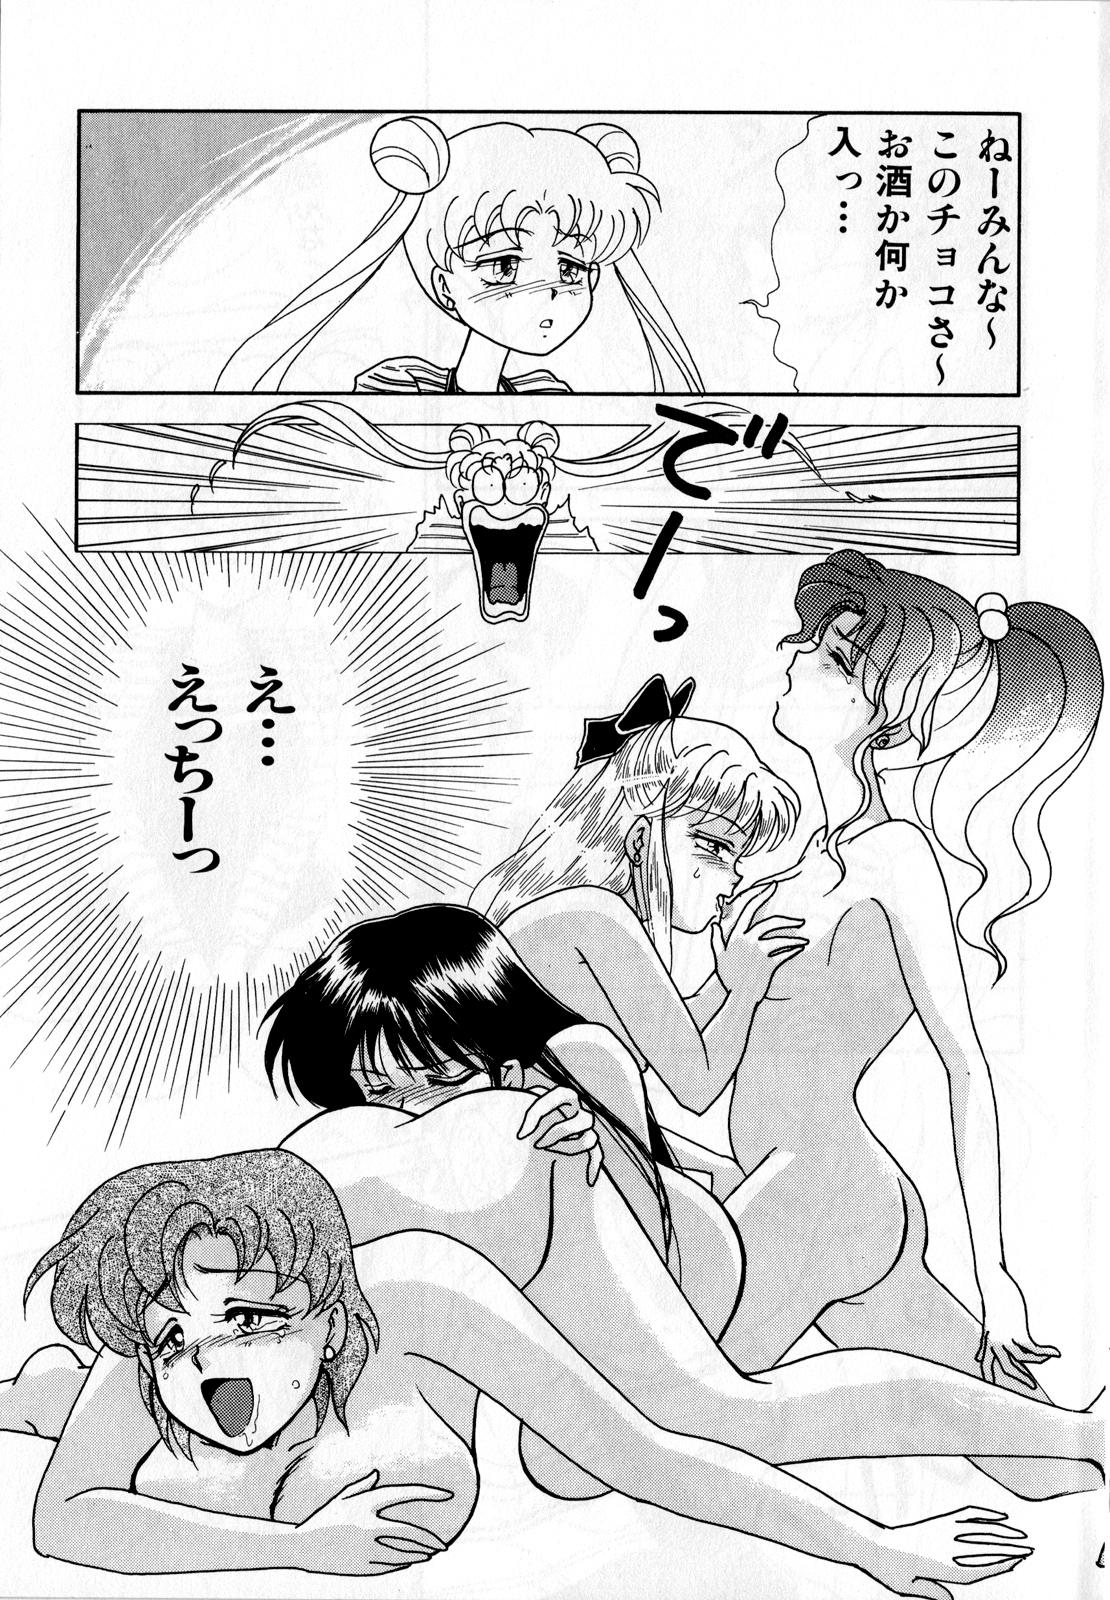 Jap Lunatic Party 3 - Sailor moon Master - Page 10